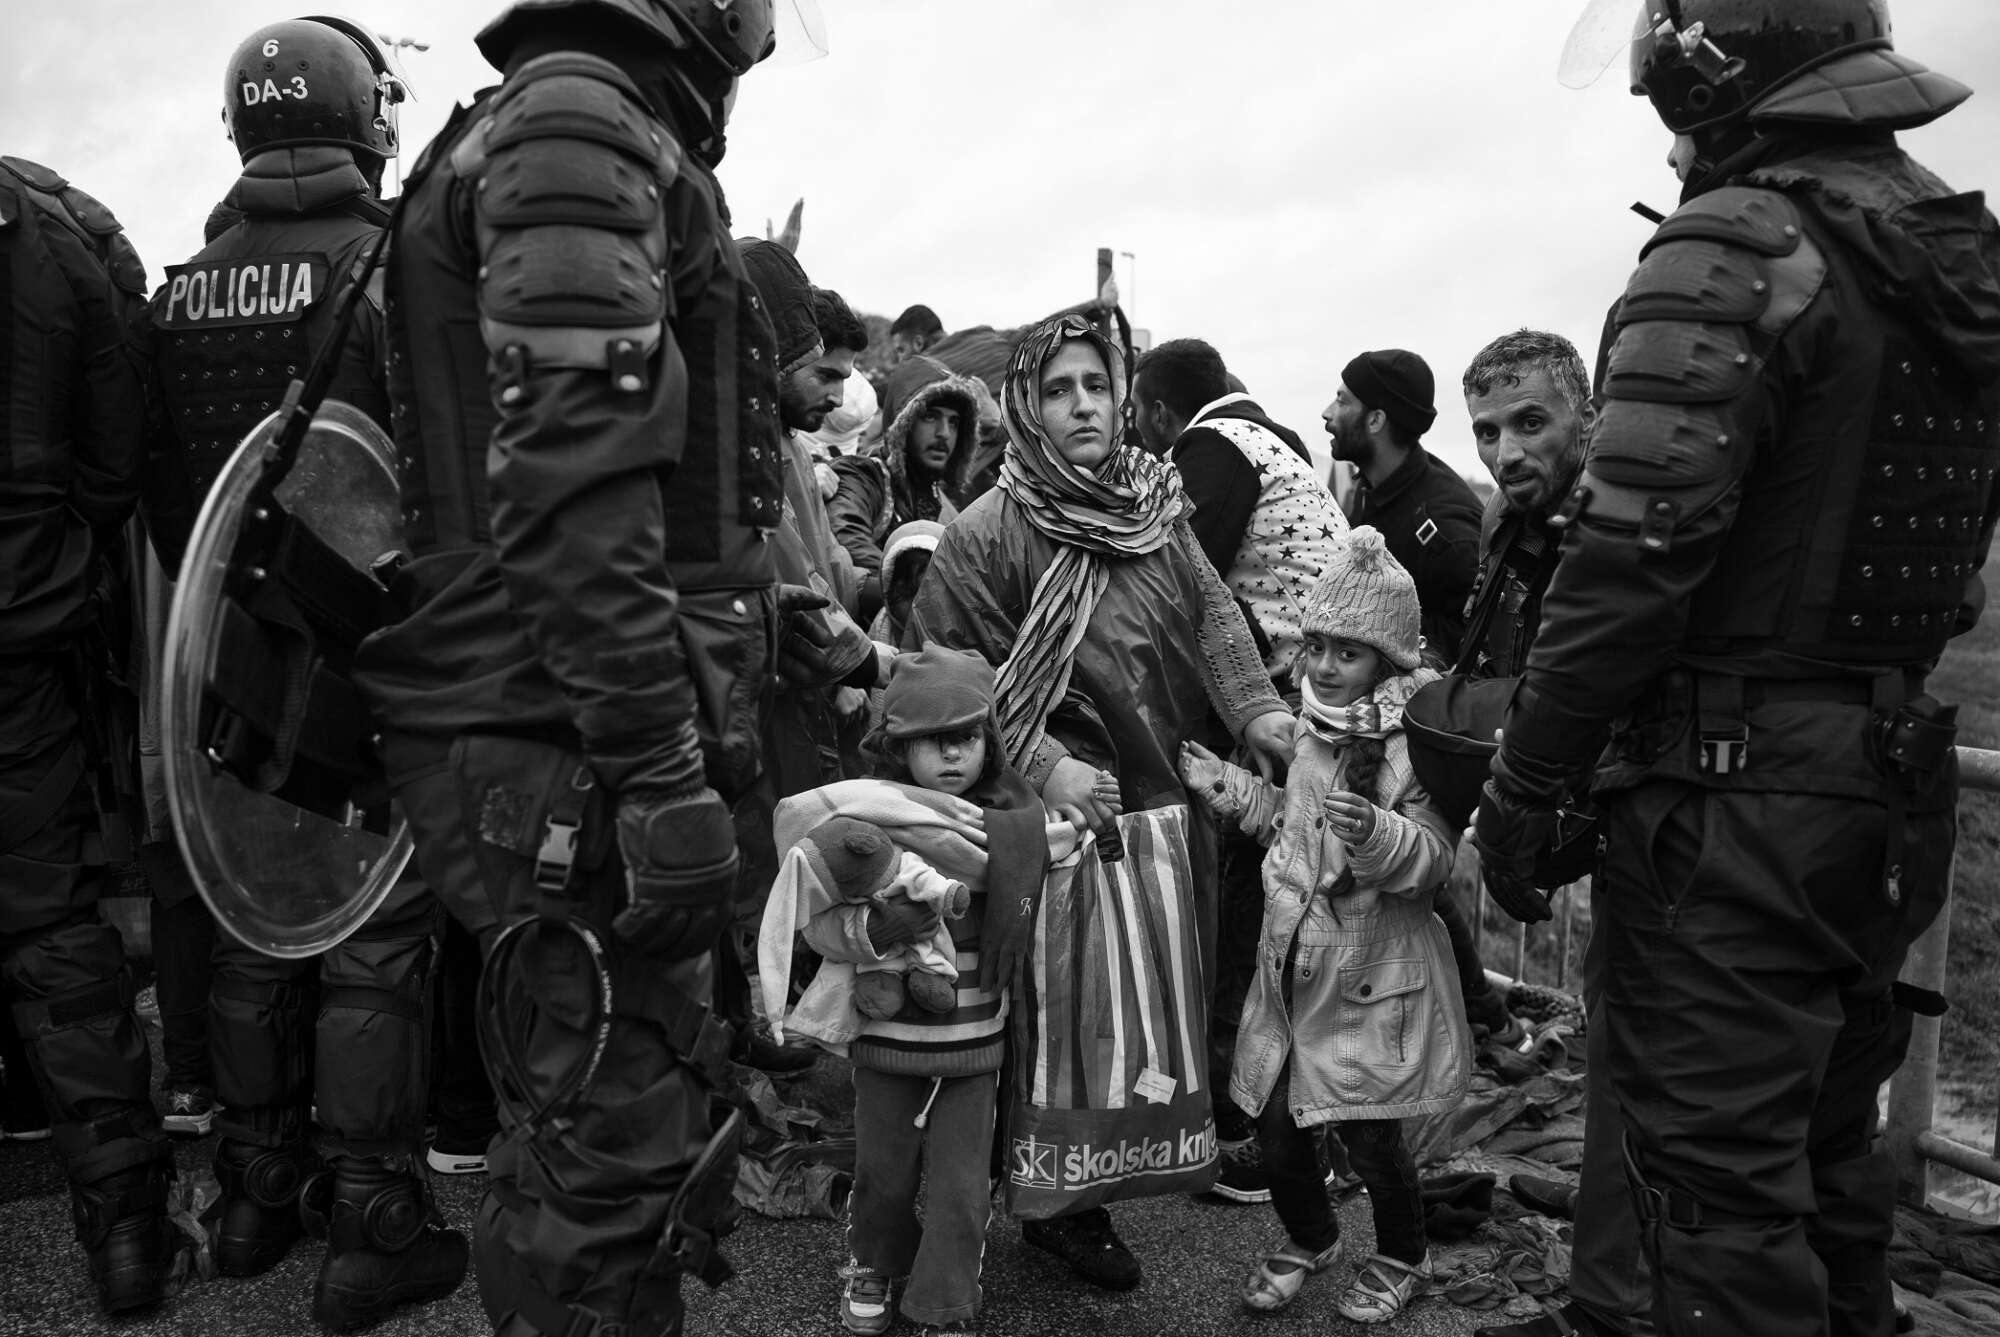 Οκτώβριος 2015, Κροατία: Στο συνοριακό πέρασμα του Τίμοβετς, μια μητέρα οδηγεί τα παιδιά της μέσα από τη γραμμή της σλοβενικής αστυνομίας. Οι καθυστερήσεις που προκαλούνται από τους περιορισμούς της ΕΕ δημιουργούν ένταση και θυμό καθώς οι άνθρωποι προσπαθούν να συνεχίσουν το ταξίδι τους προς τη Δυτική Ευρώπη